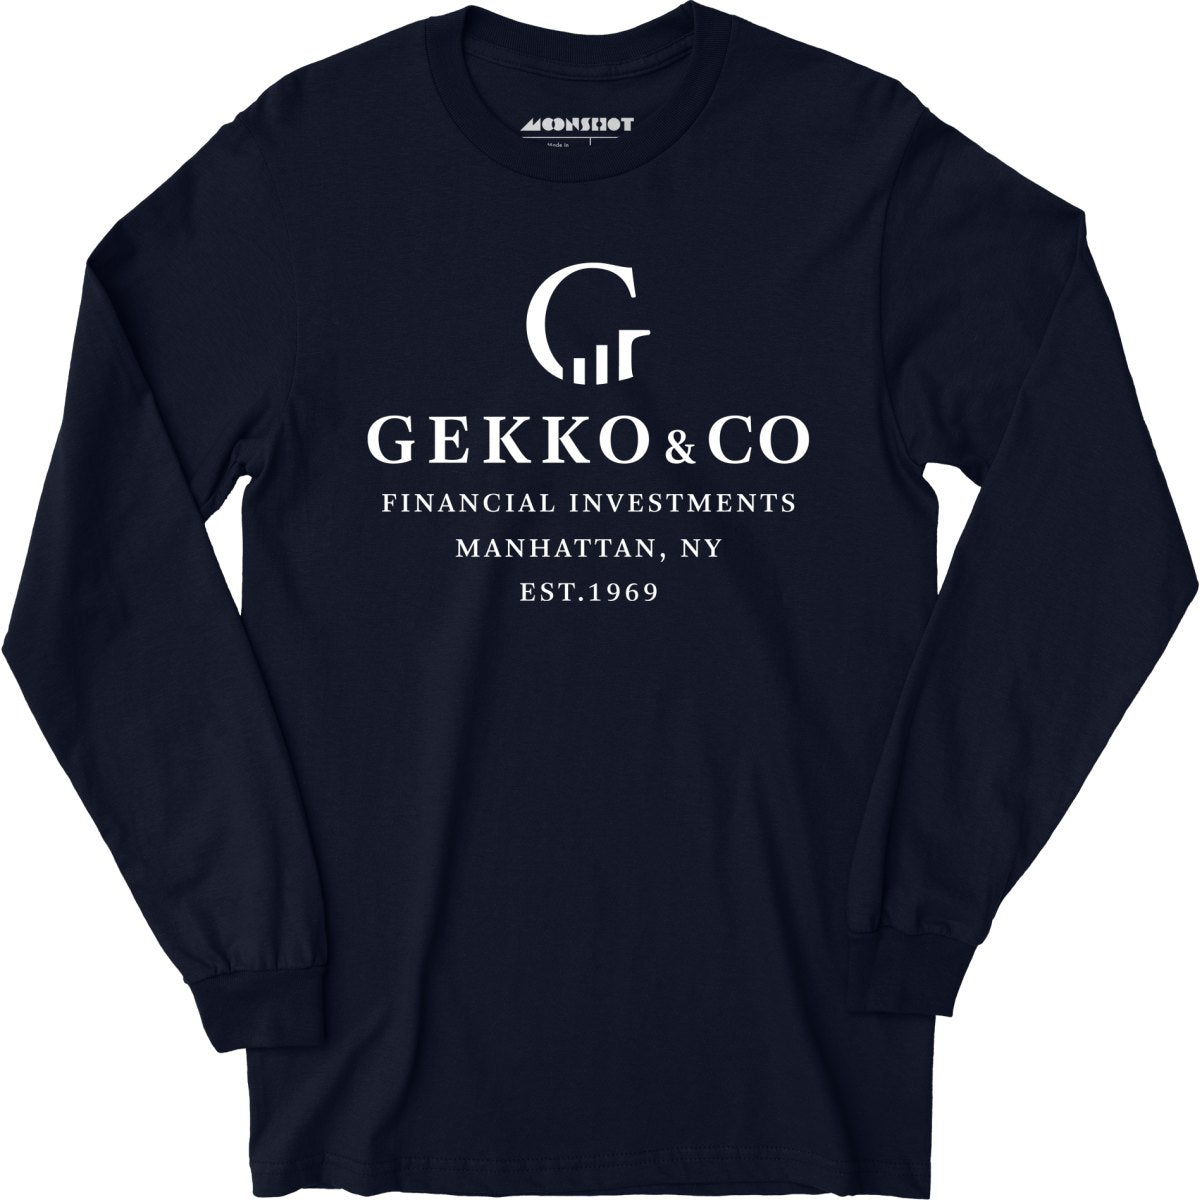 Gekko & Co. Financial Investments - Wall Street - Long Sleeve T-Shirt